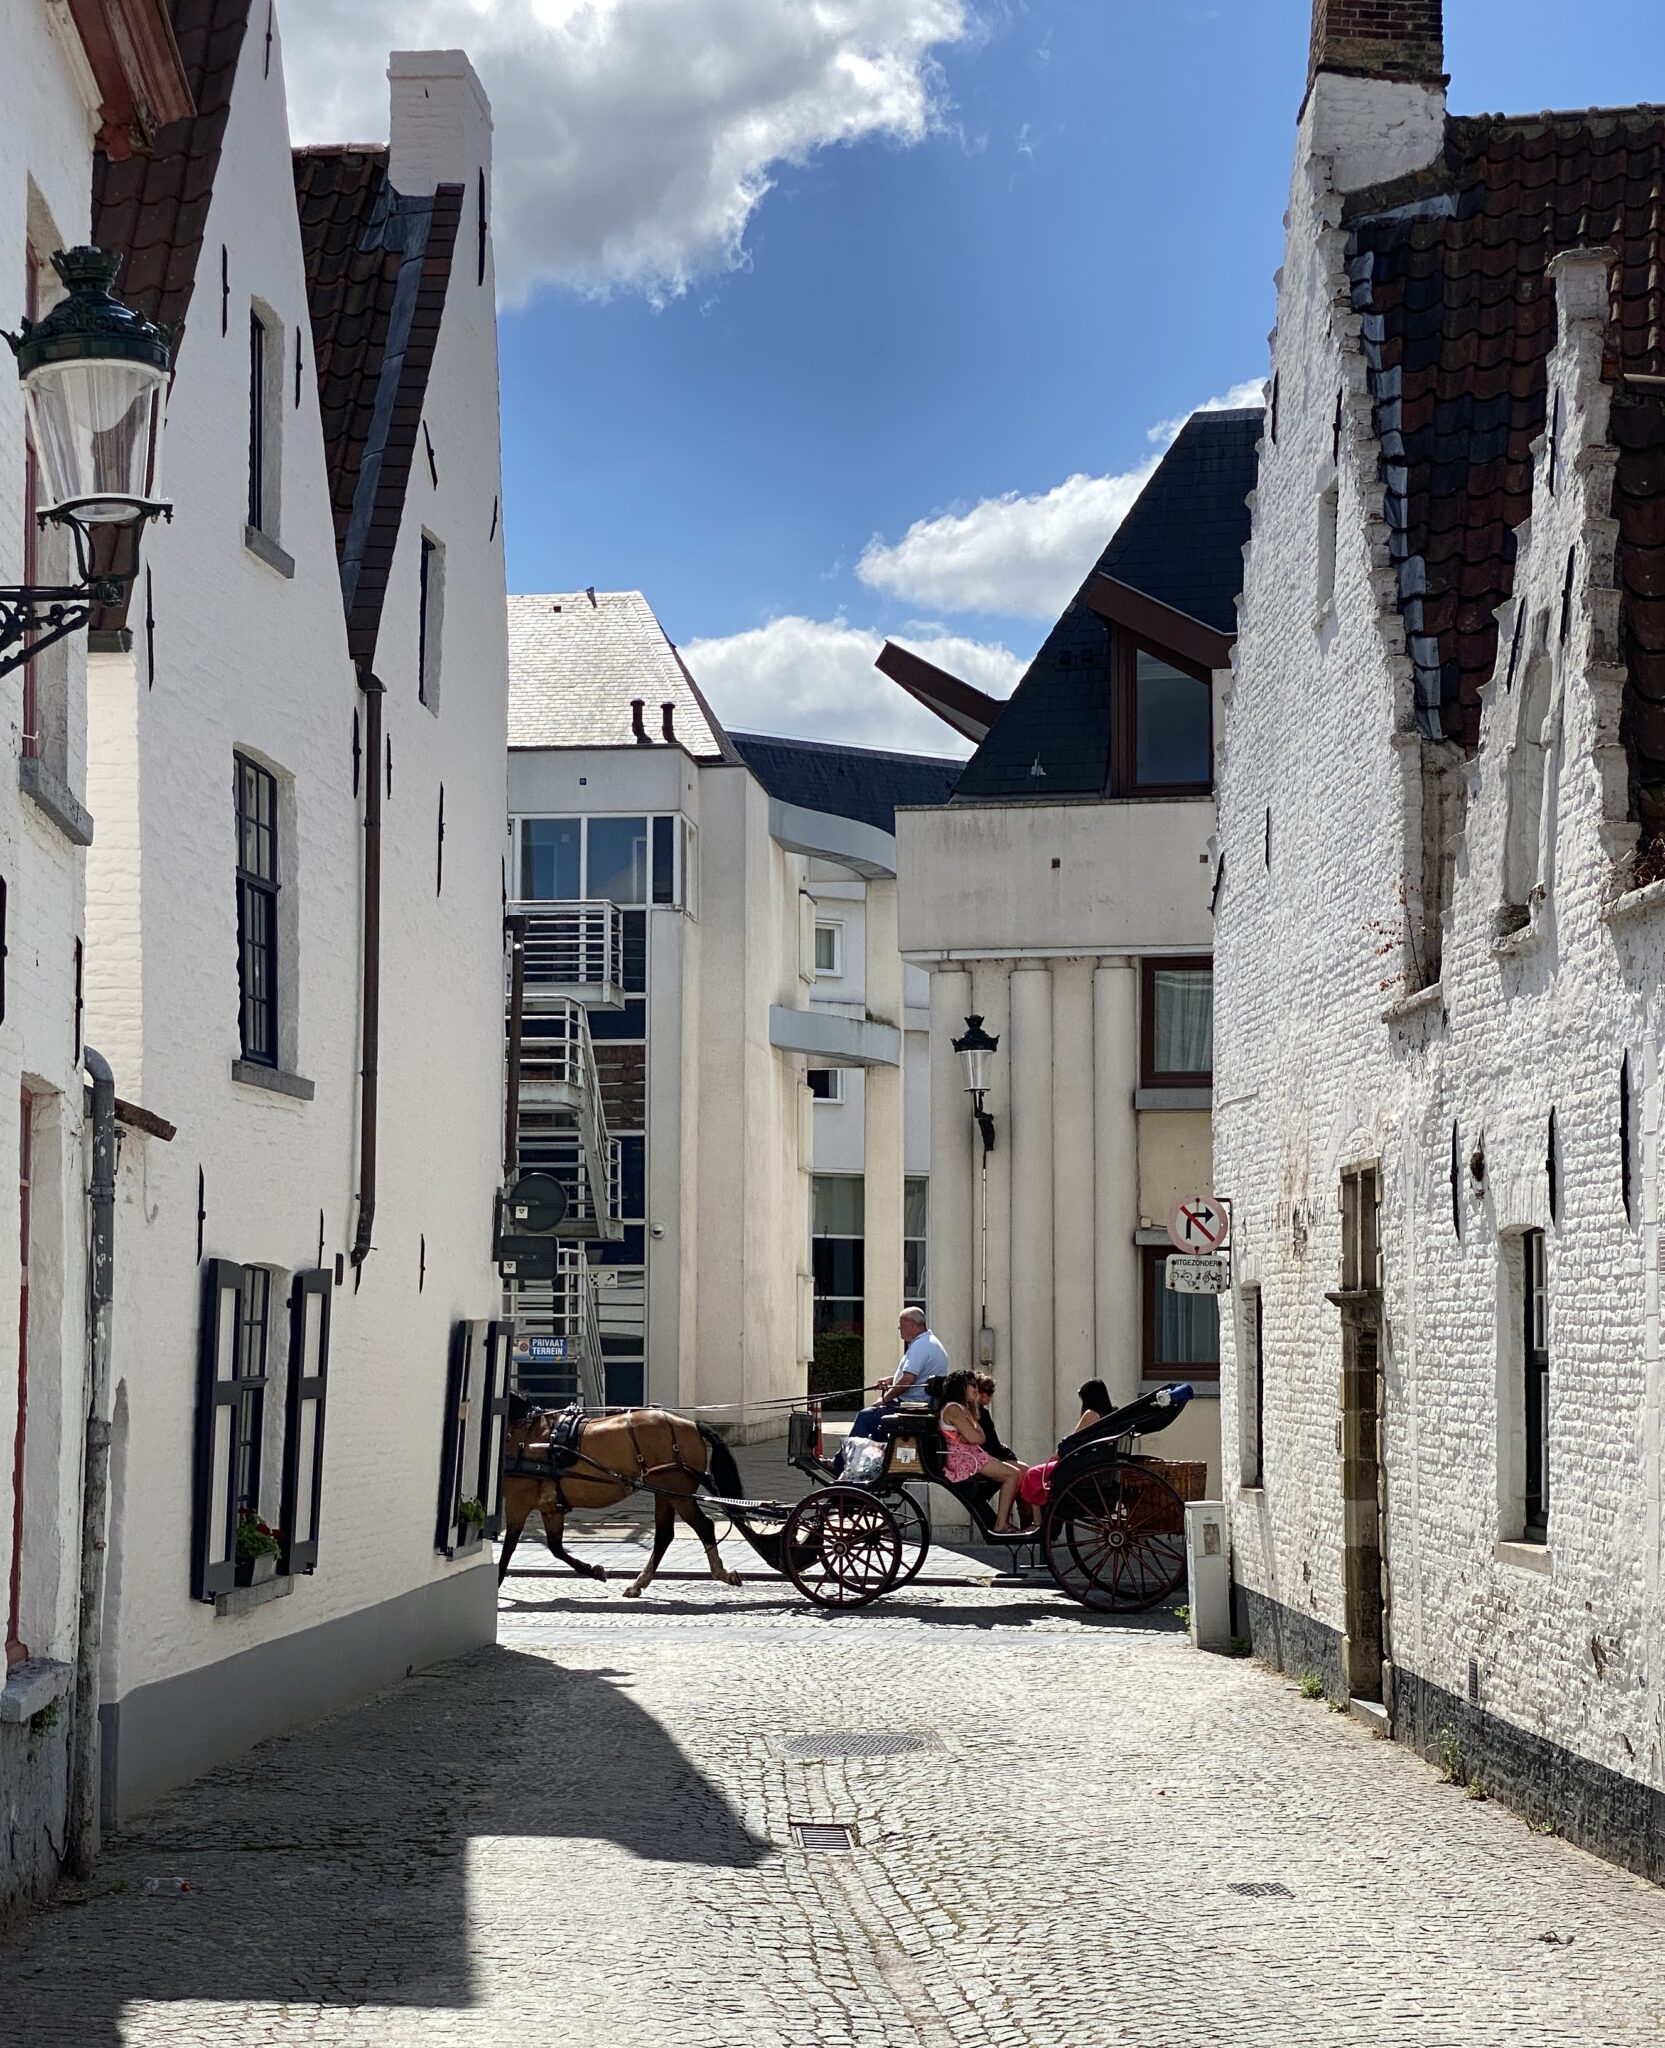 Altstadt in Brügge mit Pferdekutsche 